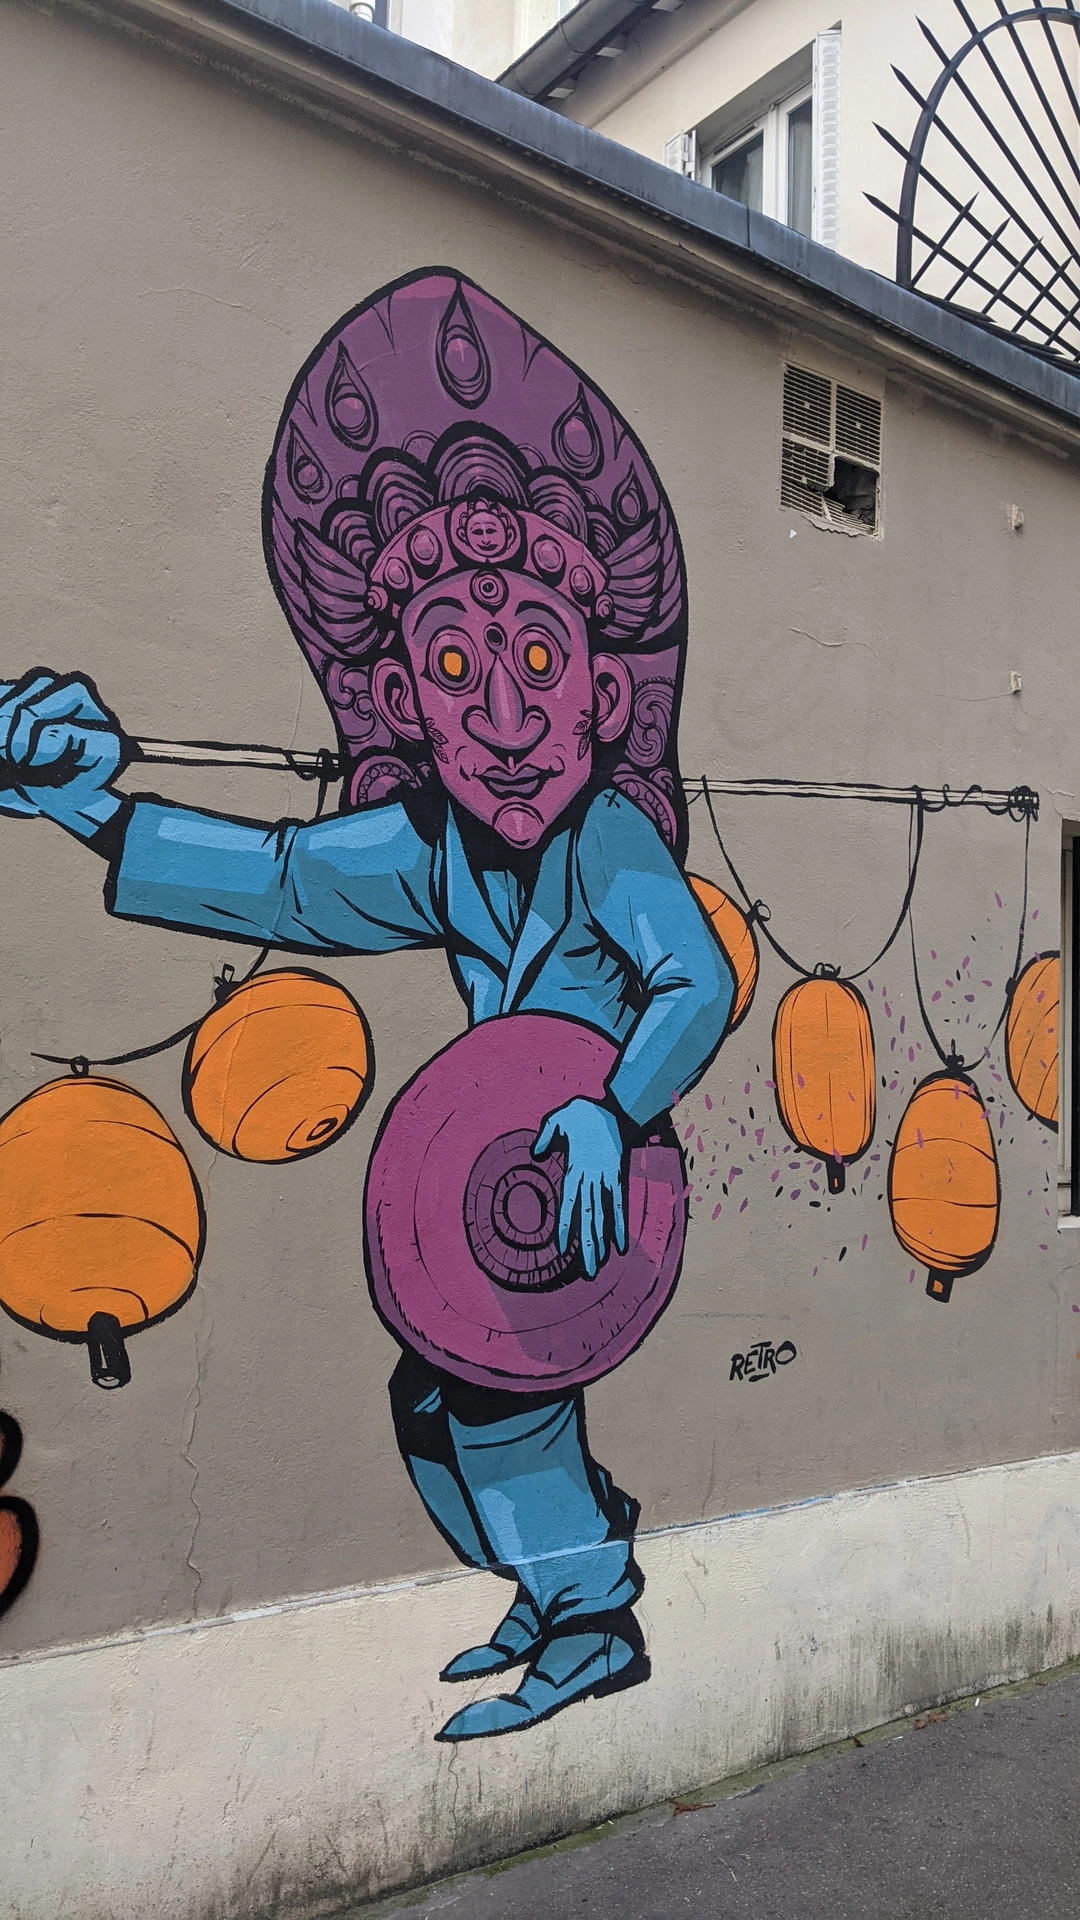 Oeuvre de Street Art réalisée par Retro à Paris